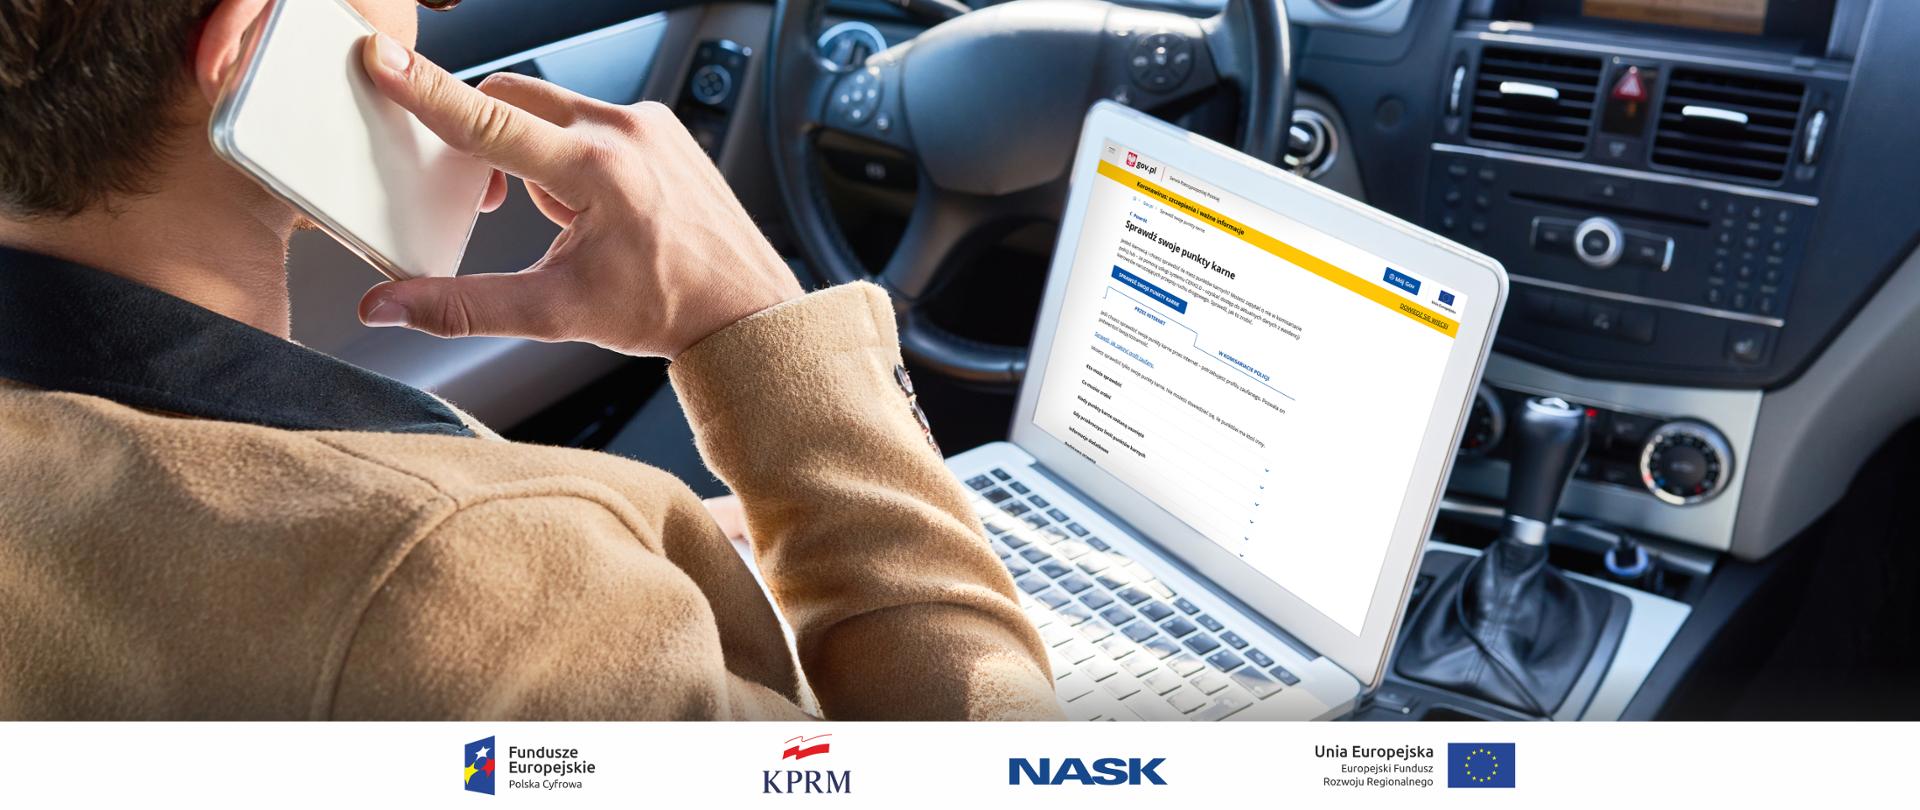 Kierowca siedzący w samochodzie (w trakcie postoju) rozmawia przez telefon, na kolanach trzyma otwartego i włączonego laptopa. Na ekranie komputera widoczna e-usługa Sprawdź swoje punkty karne, dostępna na portalu GOV.pl.